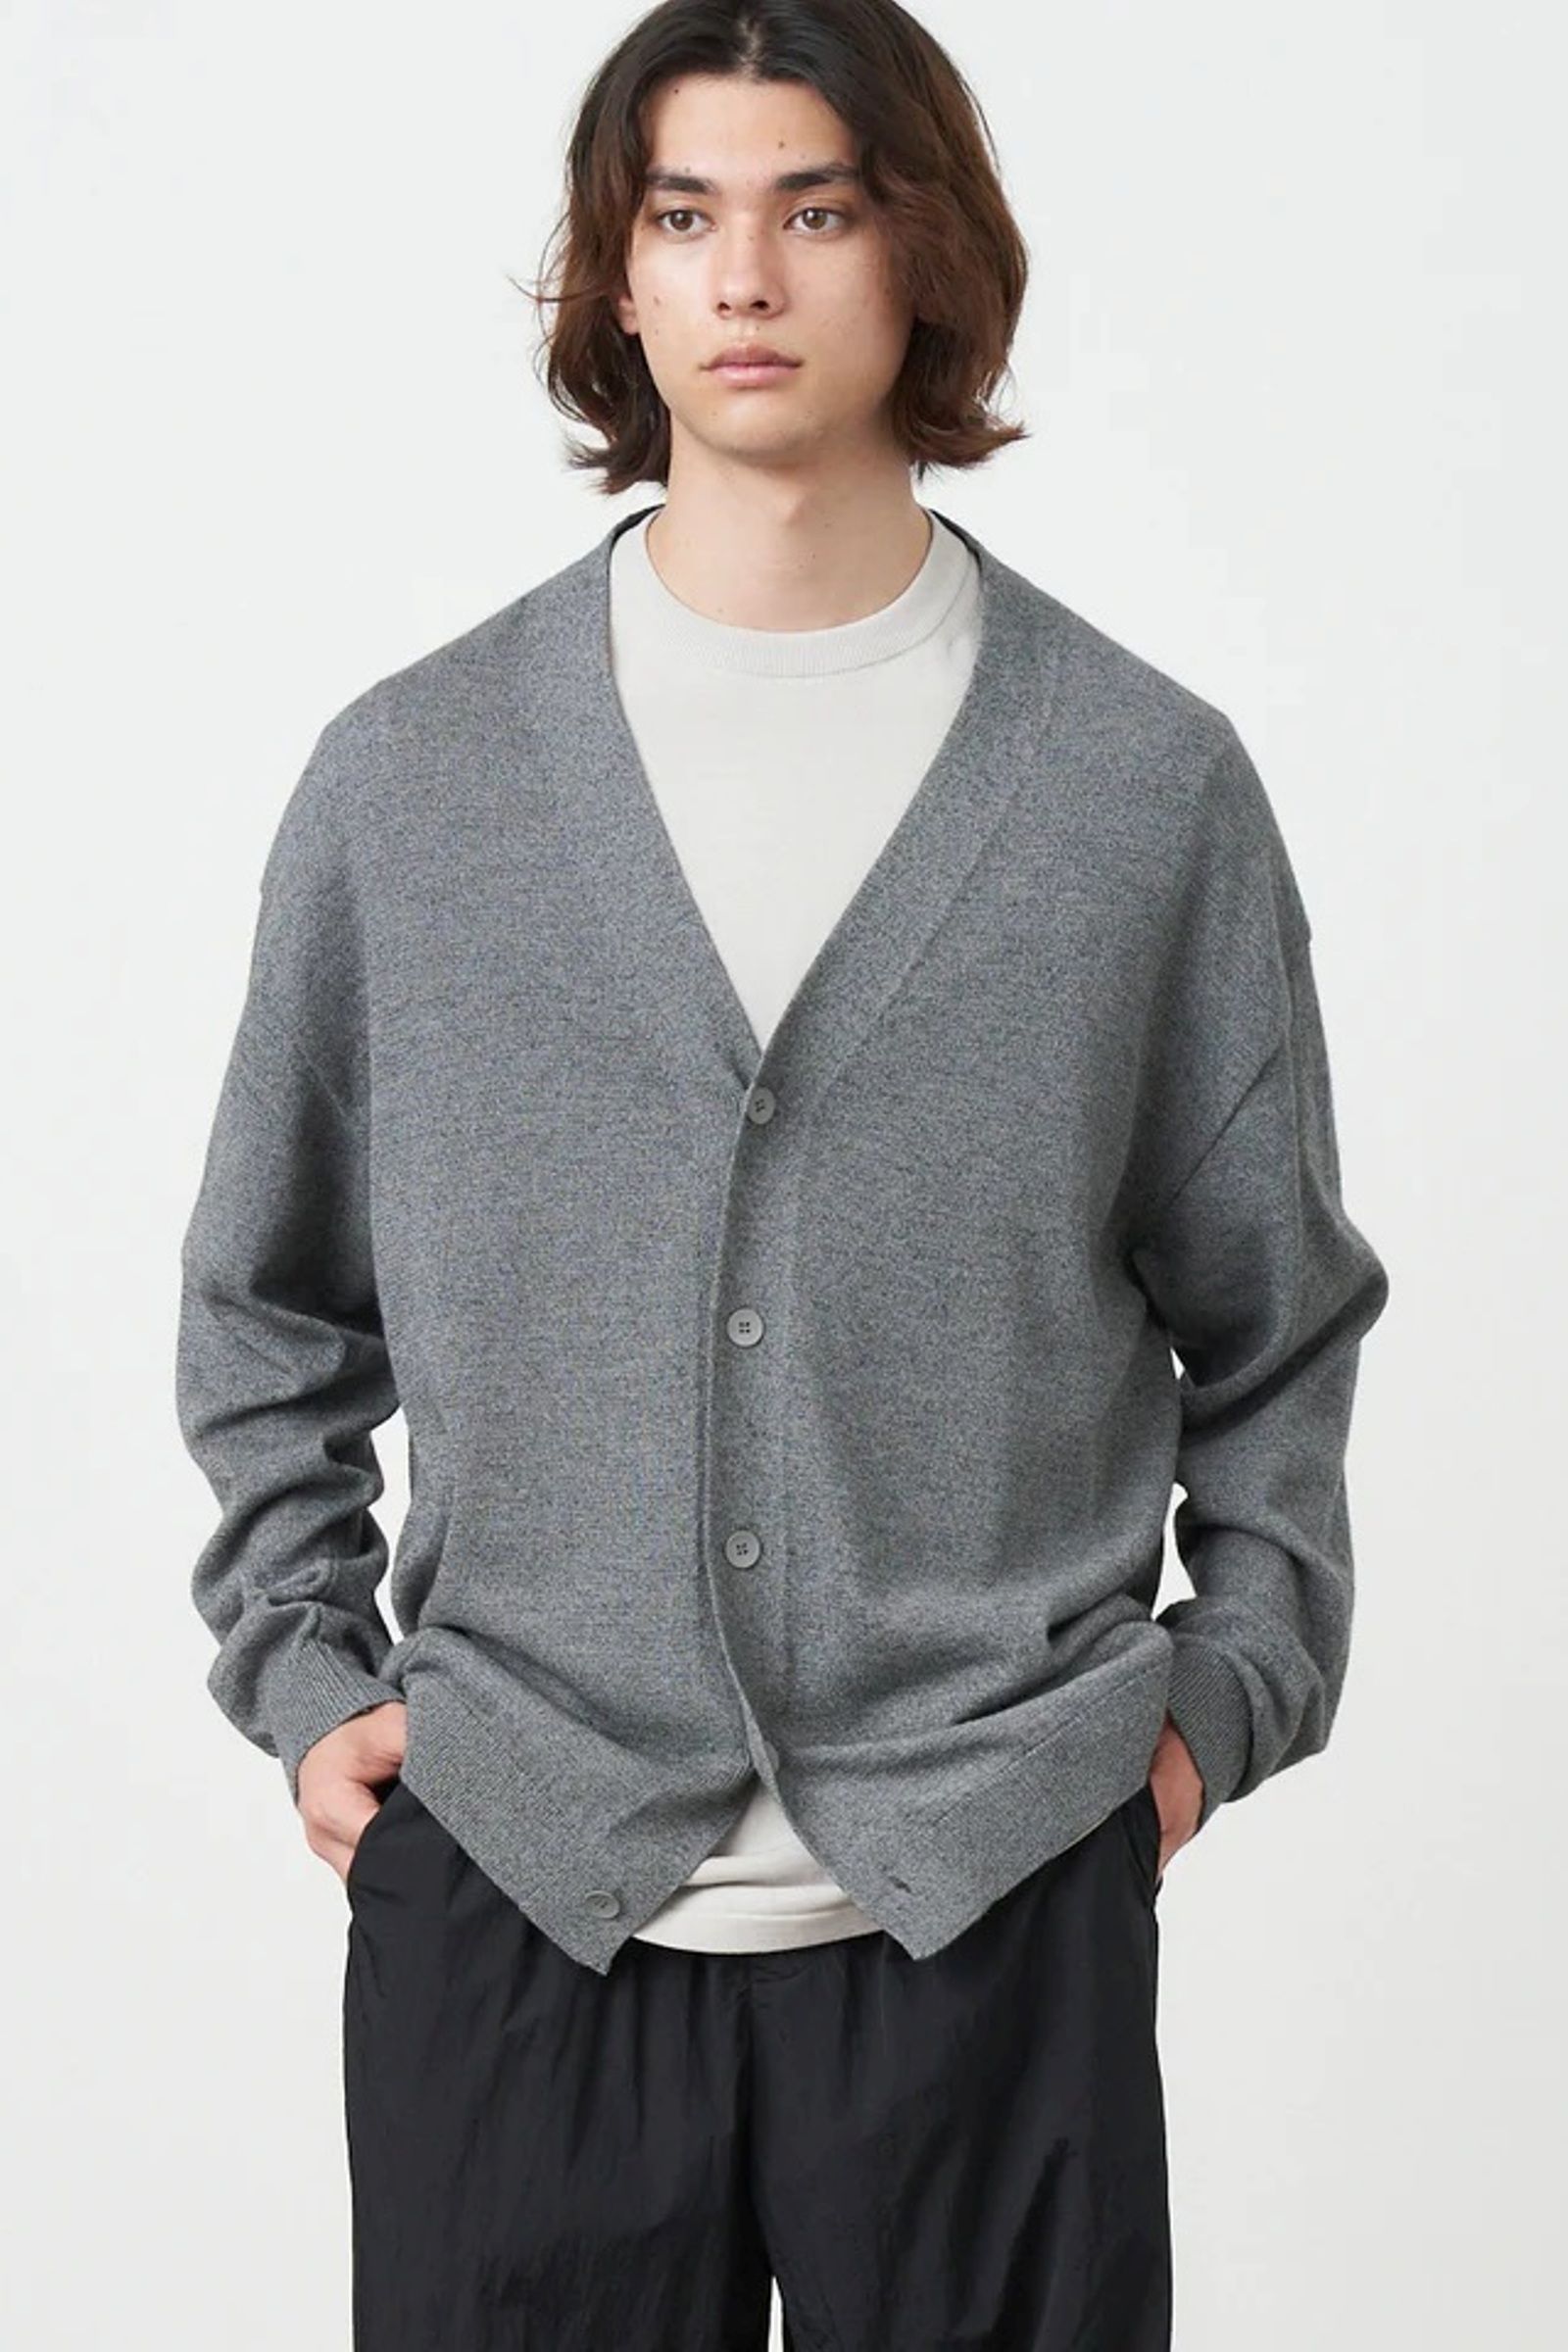 ATON - wool washi oversized cardigan -charcoal gray- unisex